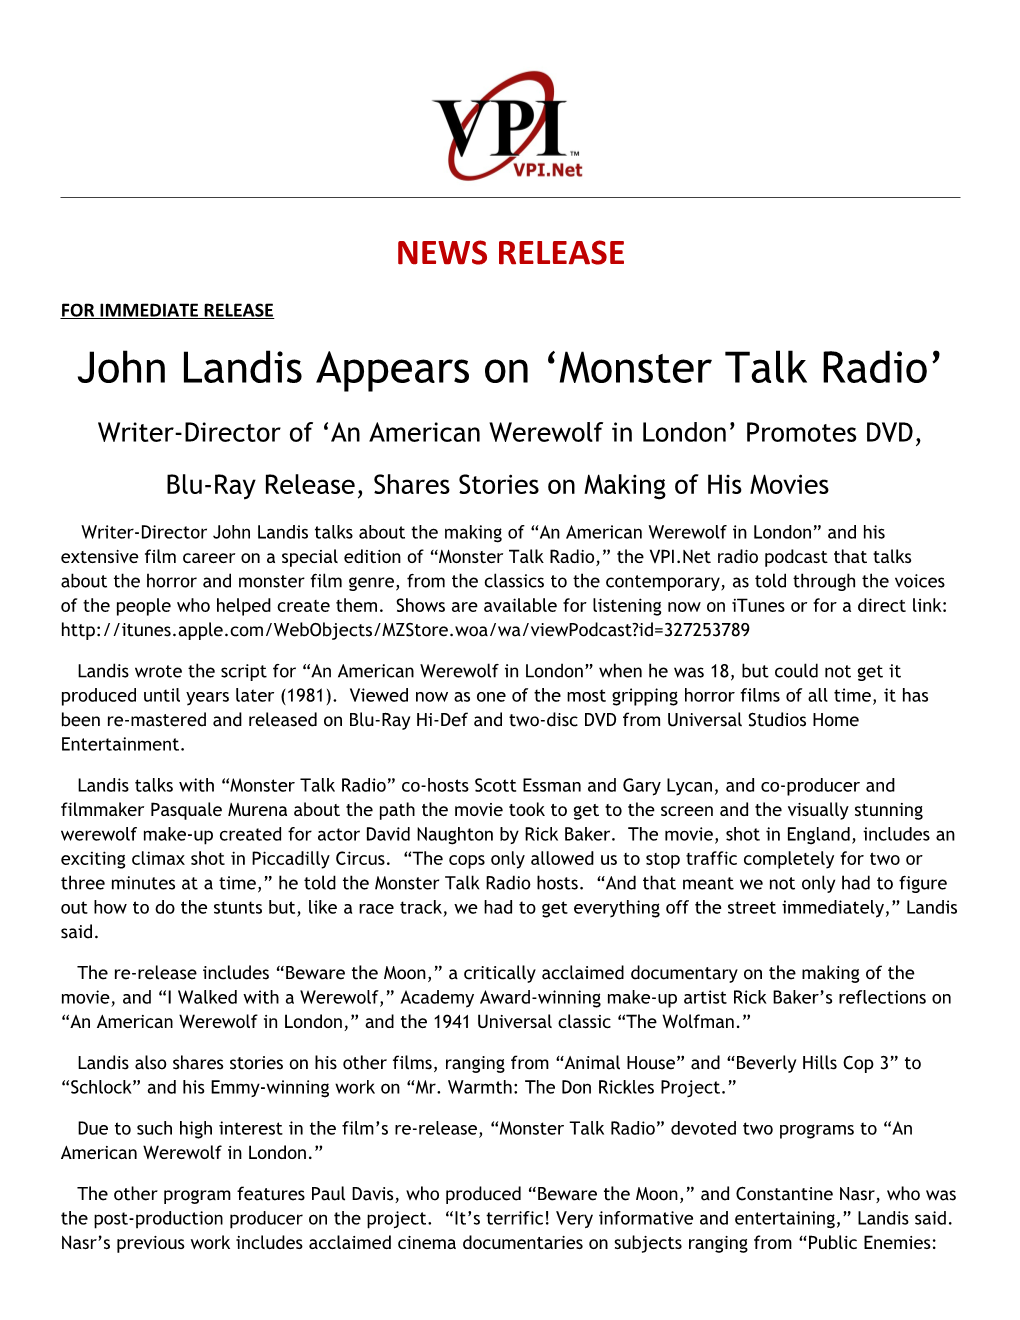 John Landis Appears on Monster Talk Radio